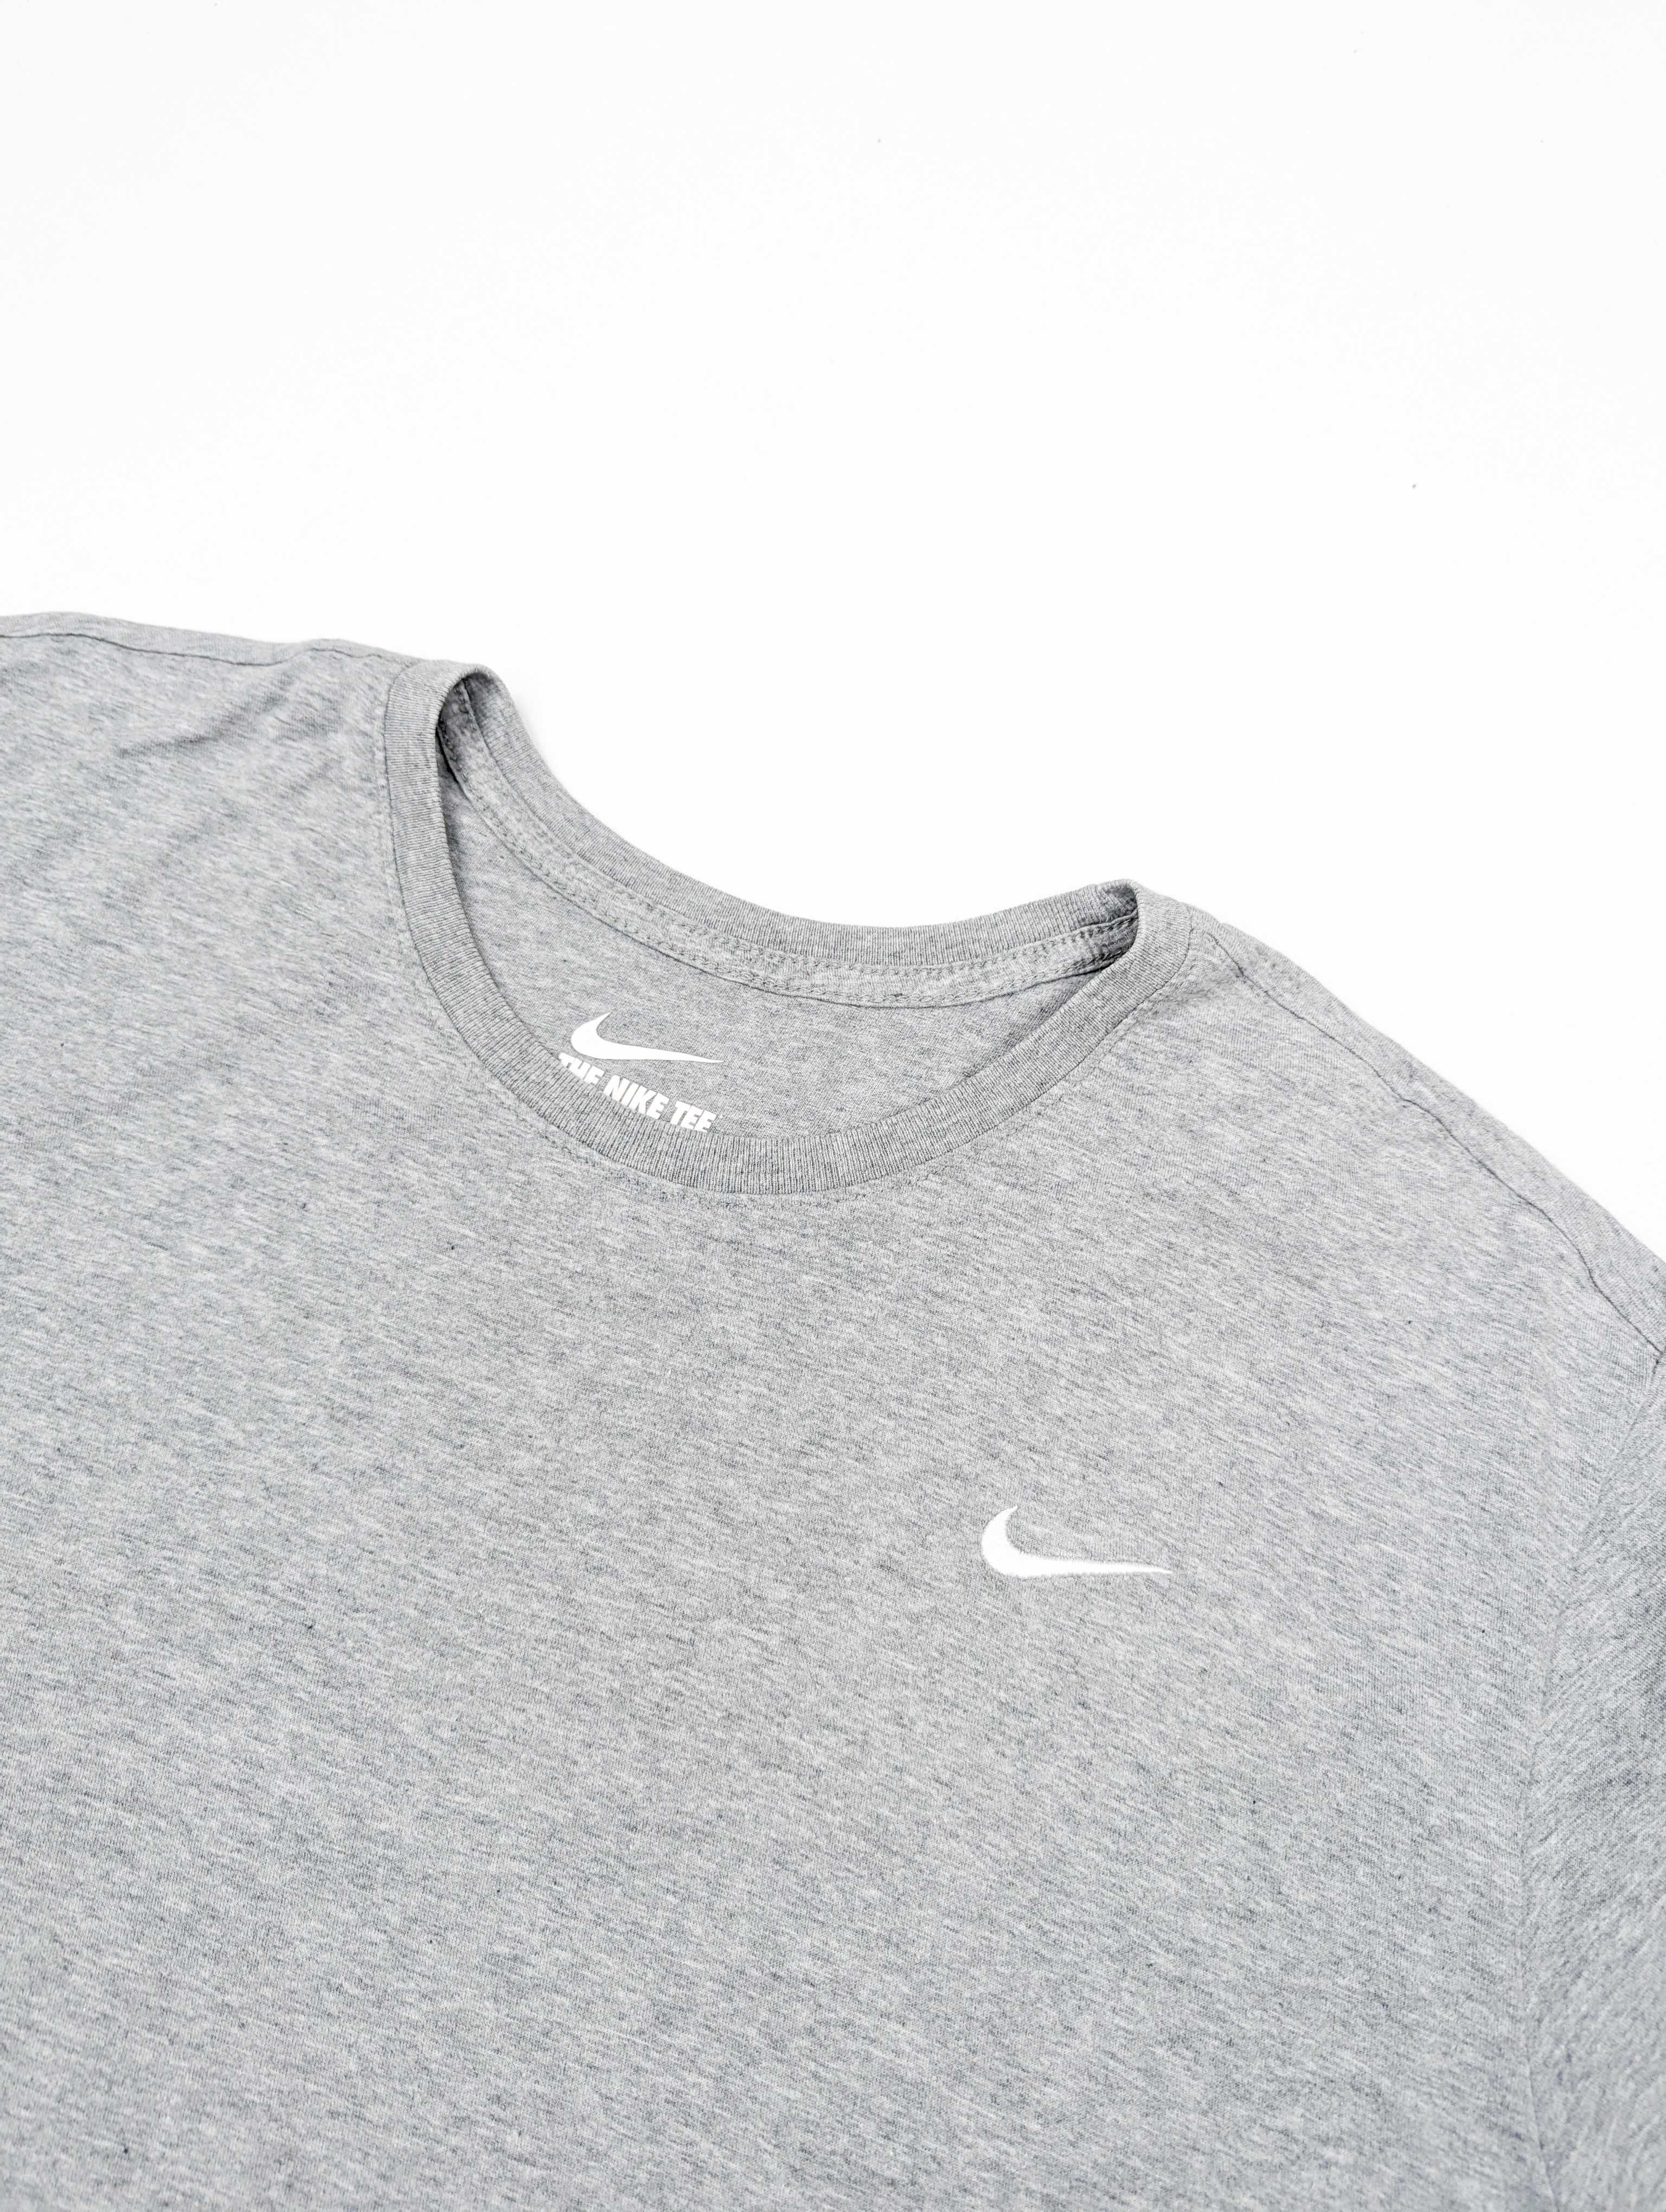 Nike szara koszulka t-shirt XL logo